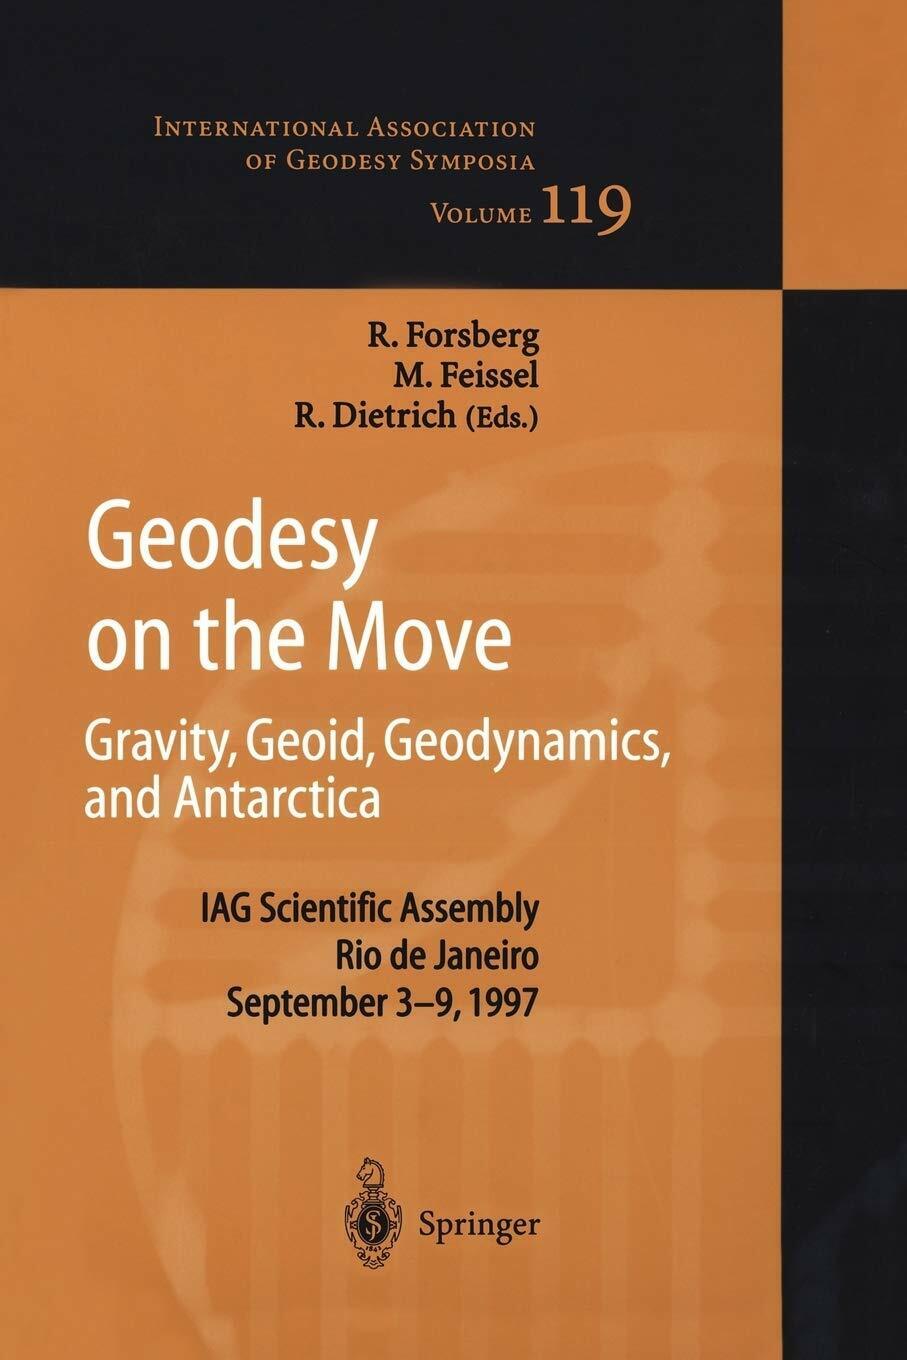 Geodesy on the Move - Rene Forsberg - Springer, 2011